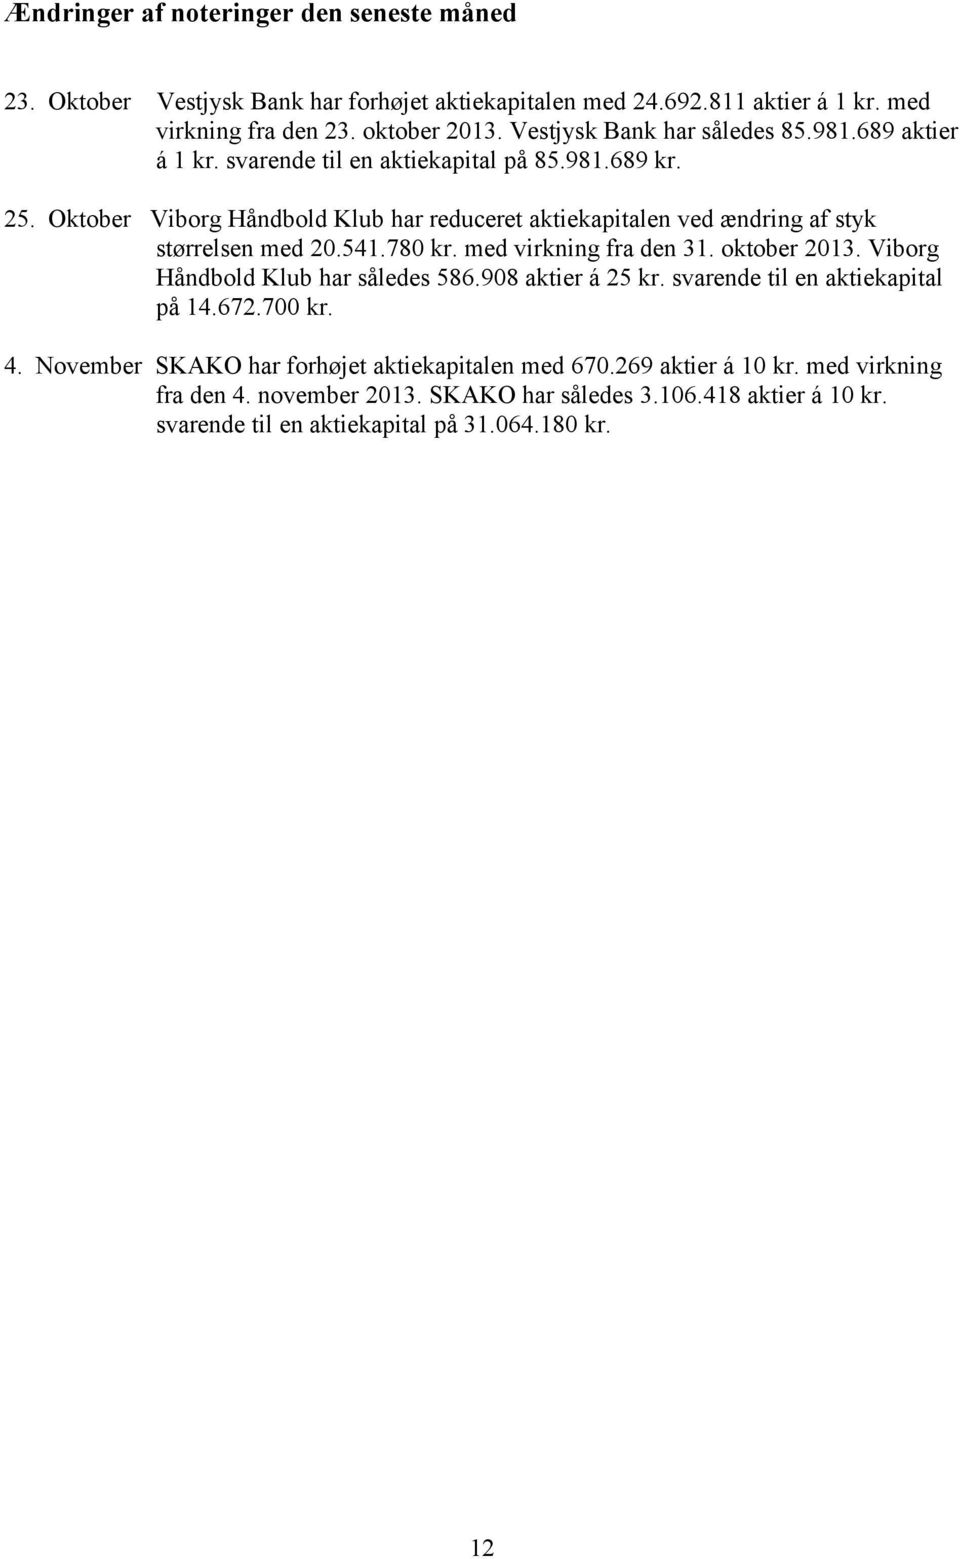 Oktober Viborg Håndbold Klub har reduceret aktiekapitalen ved ændring af styk størrelsen med 20.541.780 kr. med virkning fra den 31. oktober 2013.